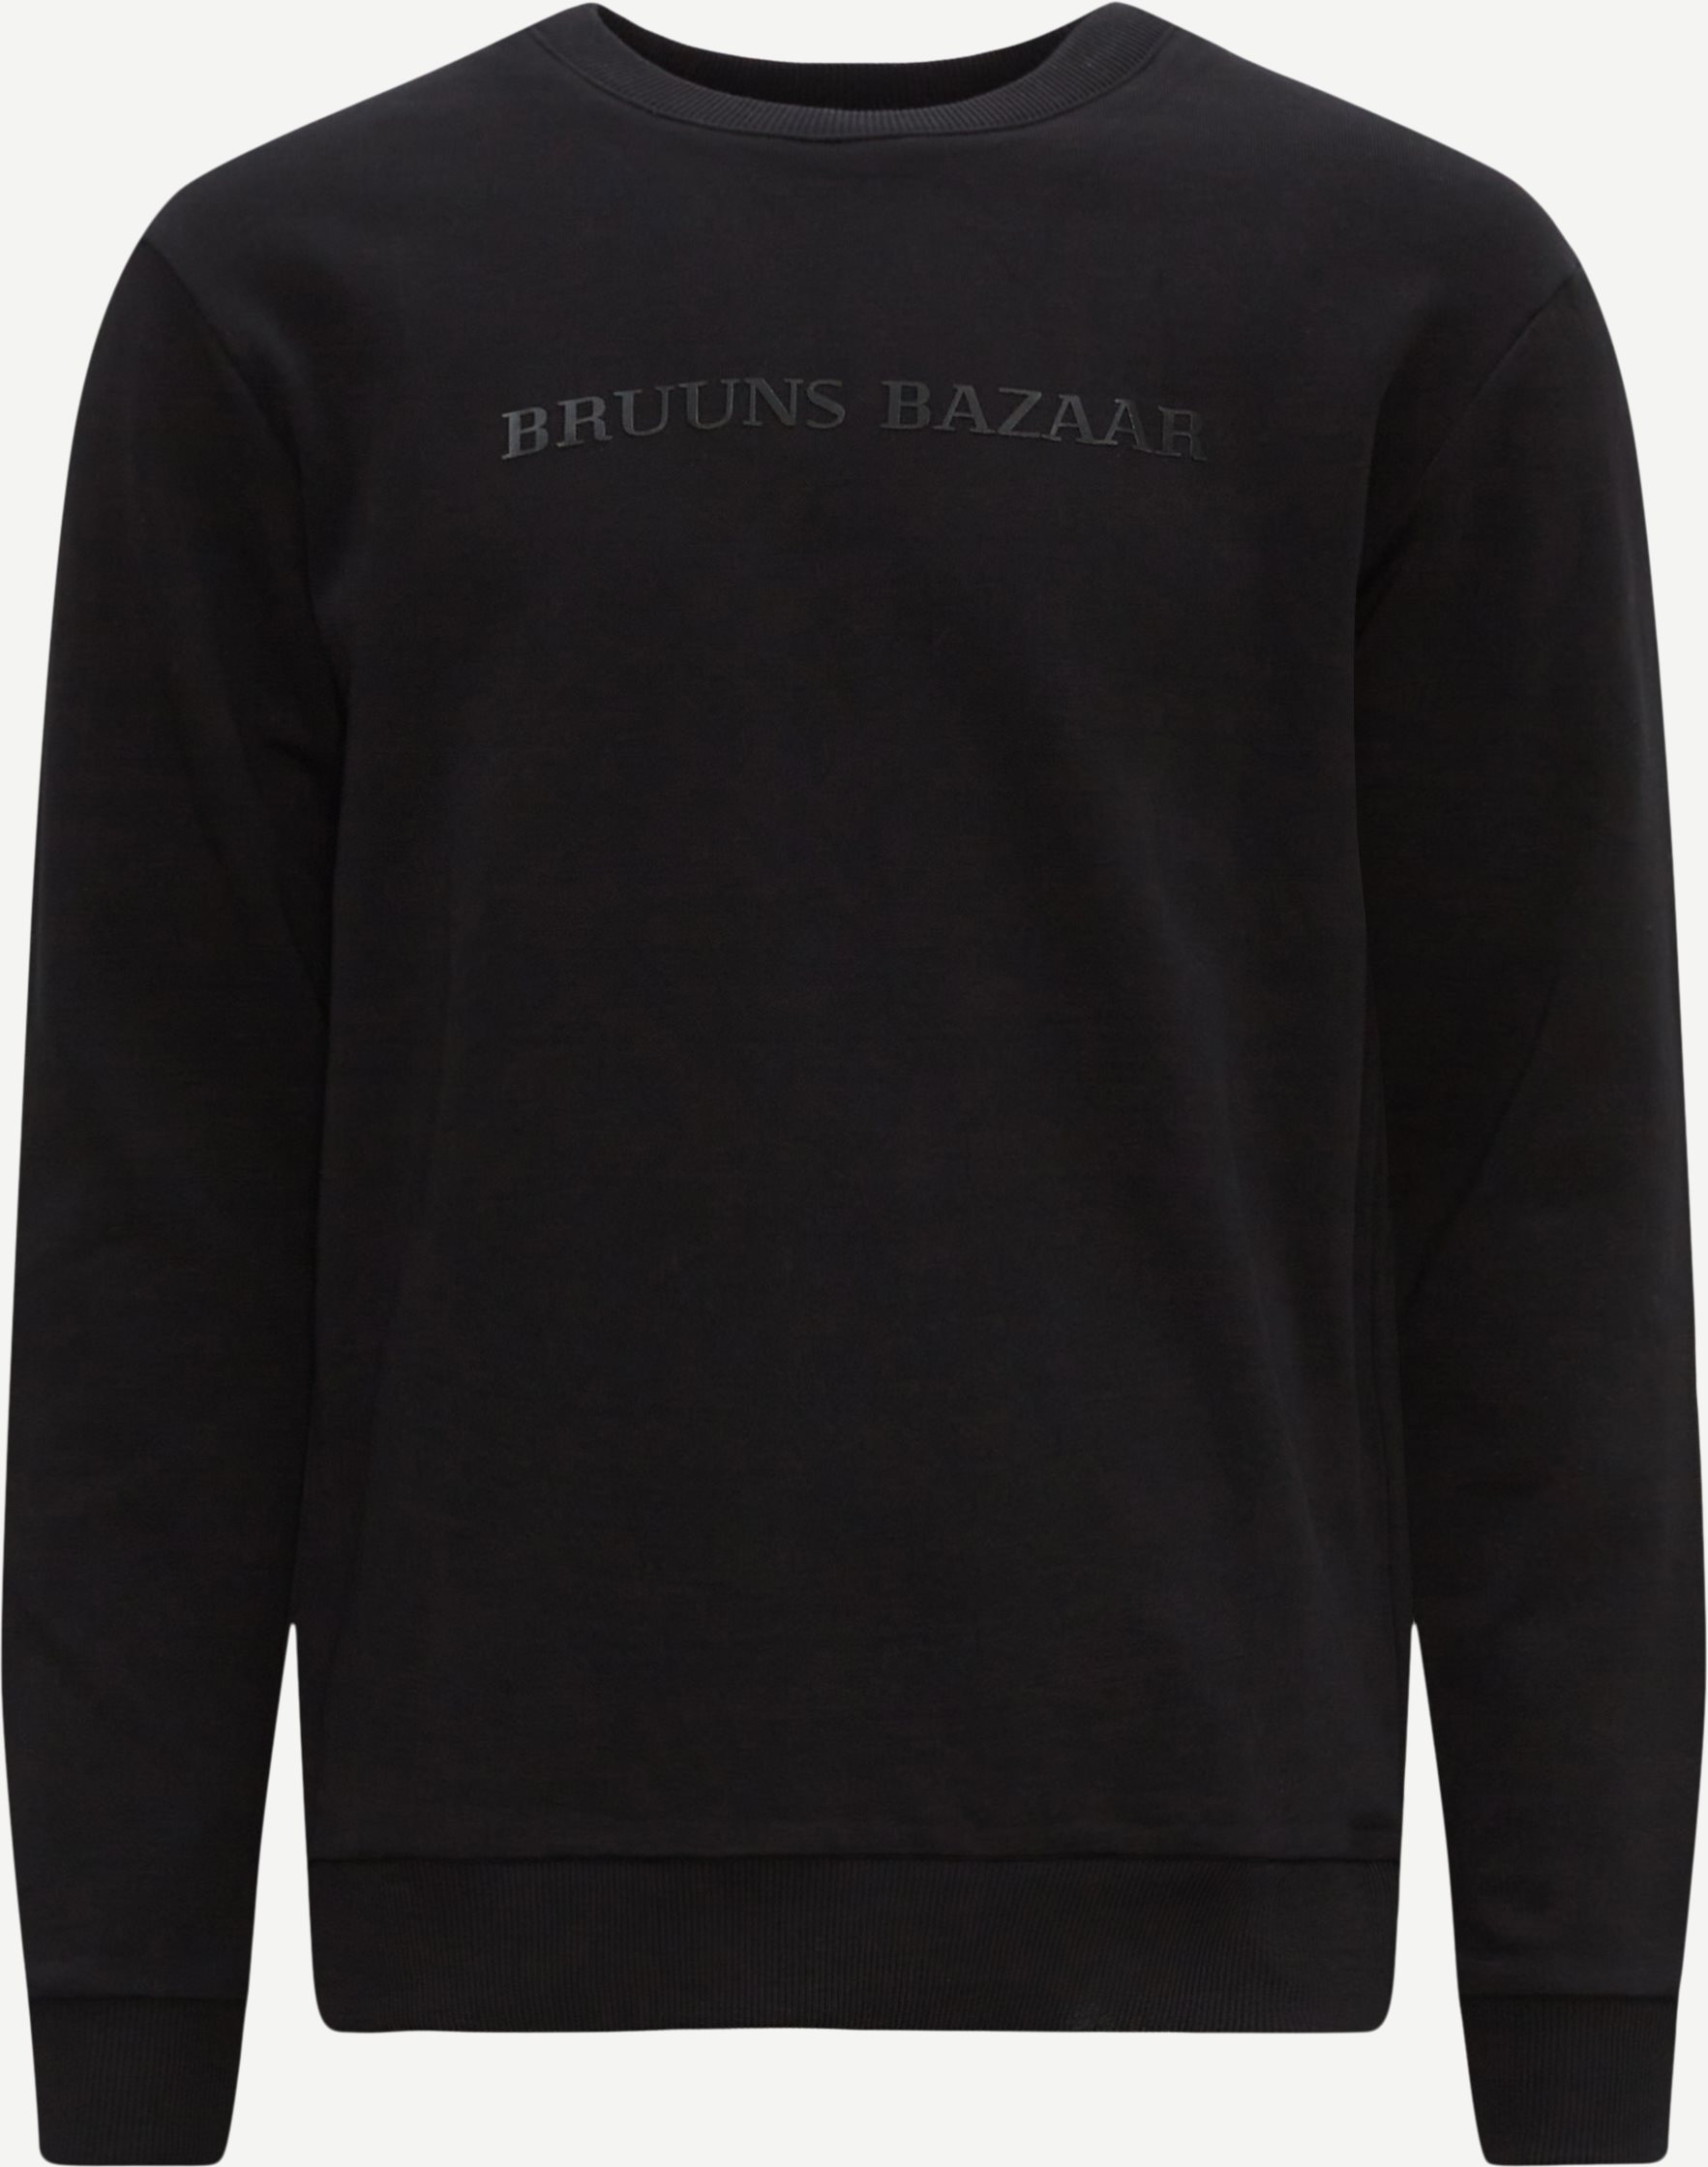 Bruuns Bazaar Sweatshirts BIRK CREW NECK BBM1279 Svart